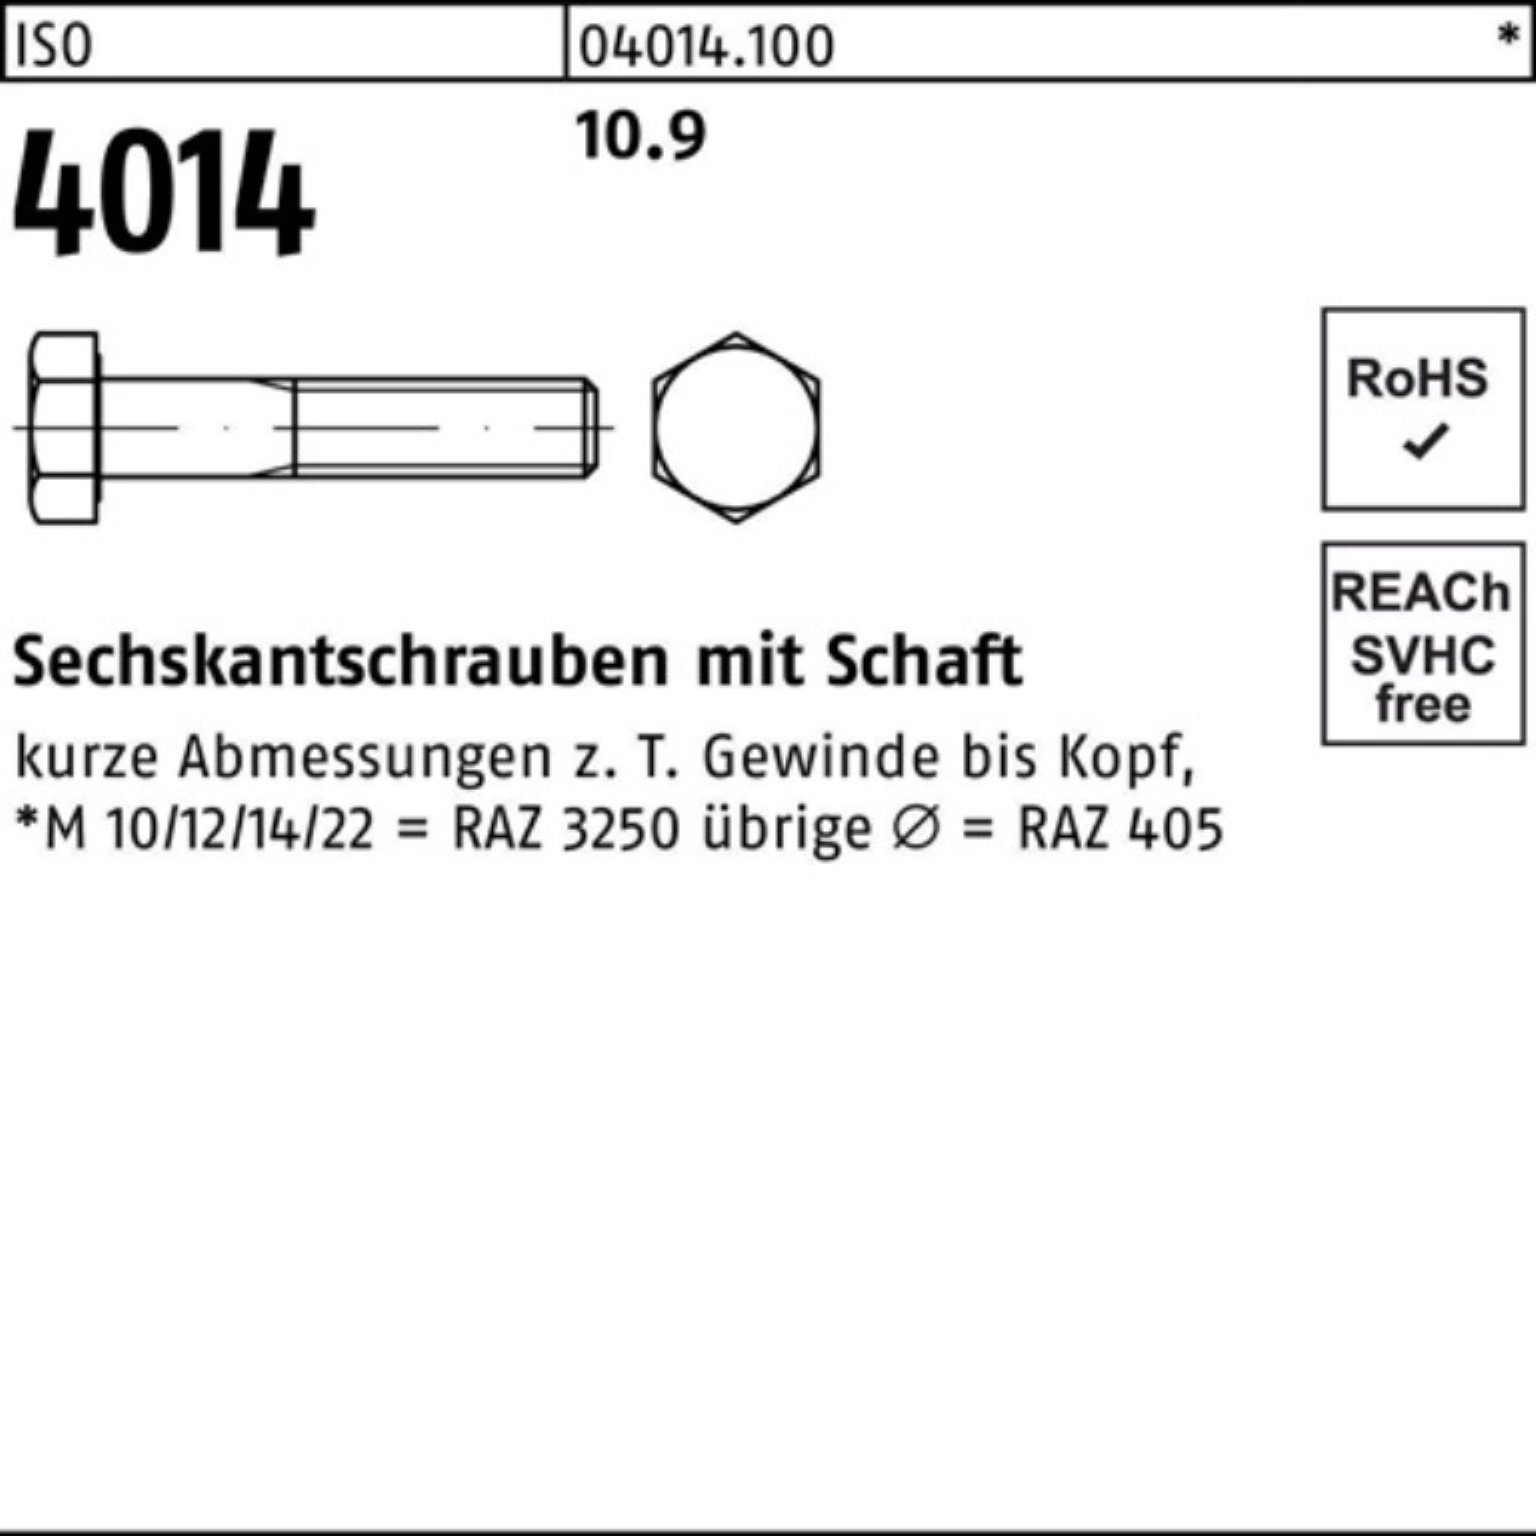 260 IS Pack Sechskantschraube Bufab M33x 1 4014 Stück 10.9 Sechskantschraube 100er ISO Schaft